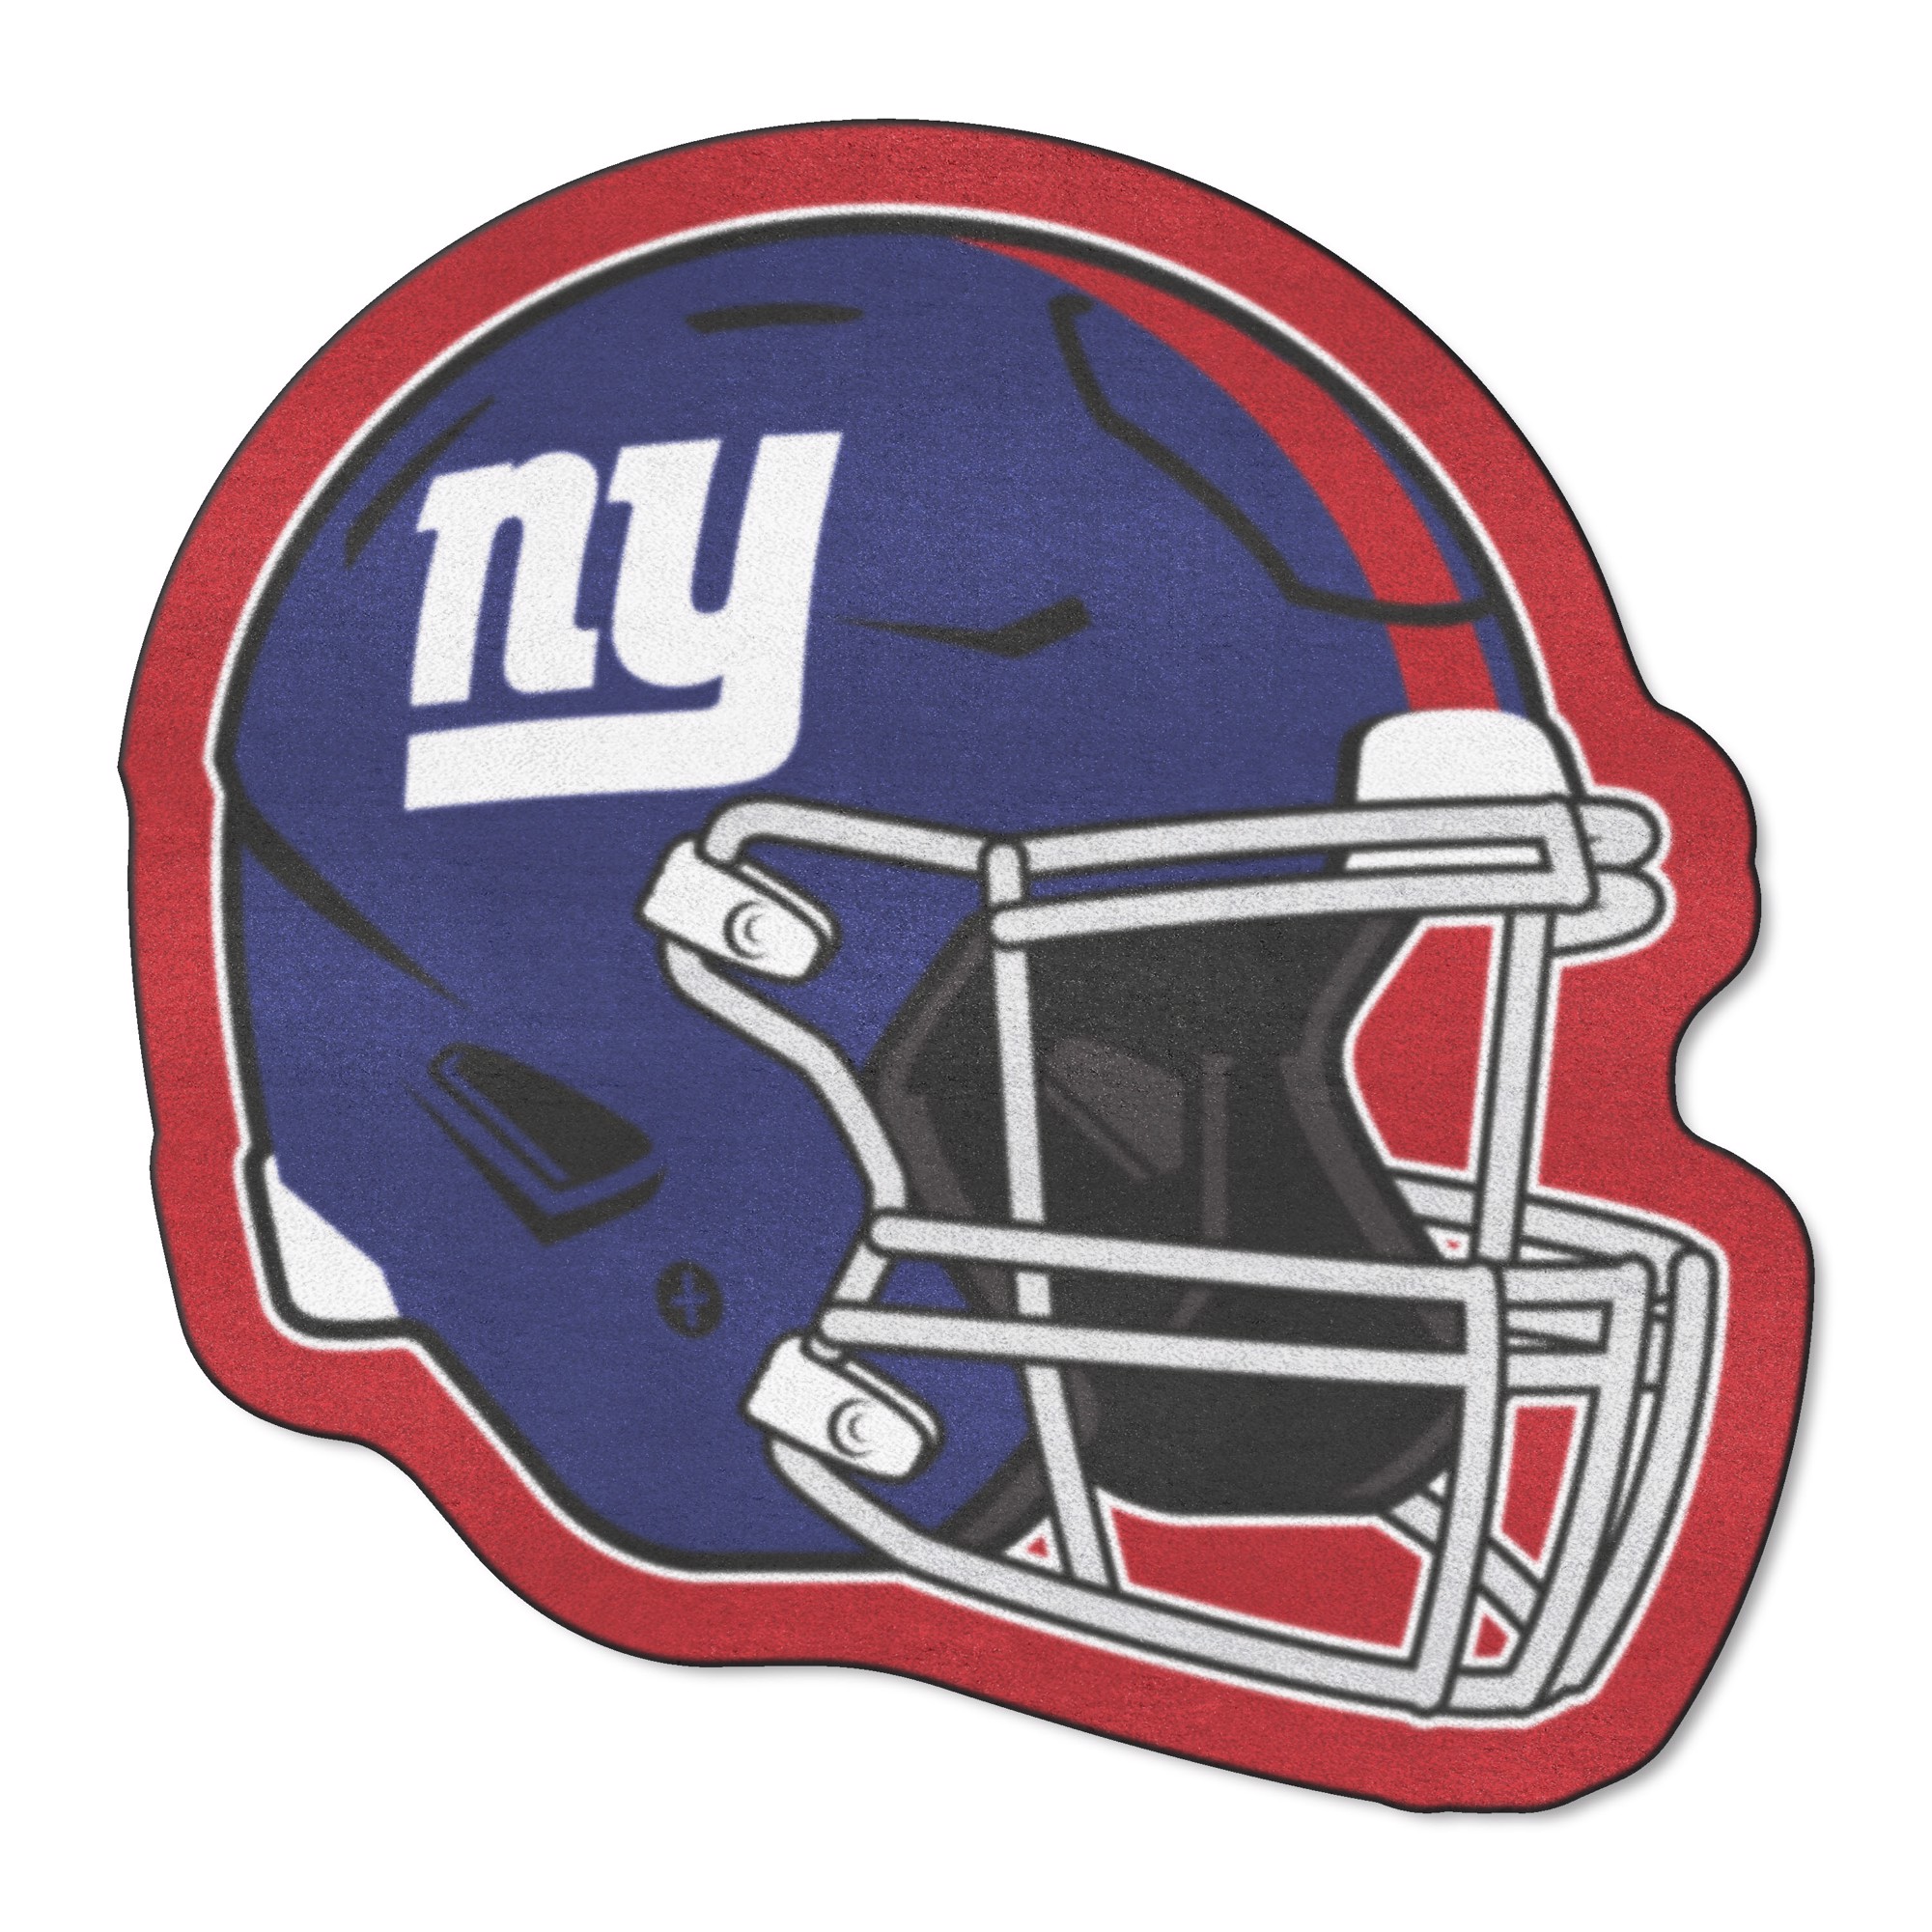 Fanmats Buffalo Bills Mascot Mat - Helmet